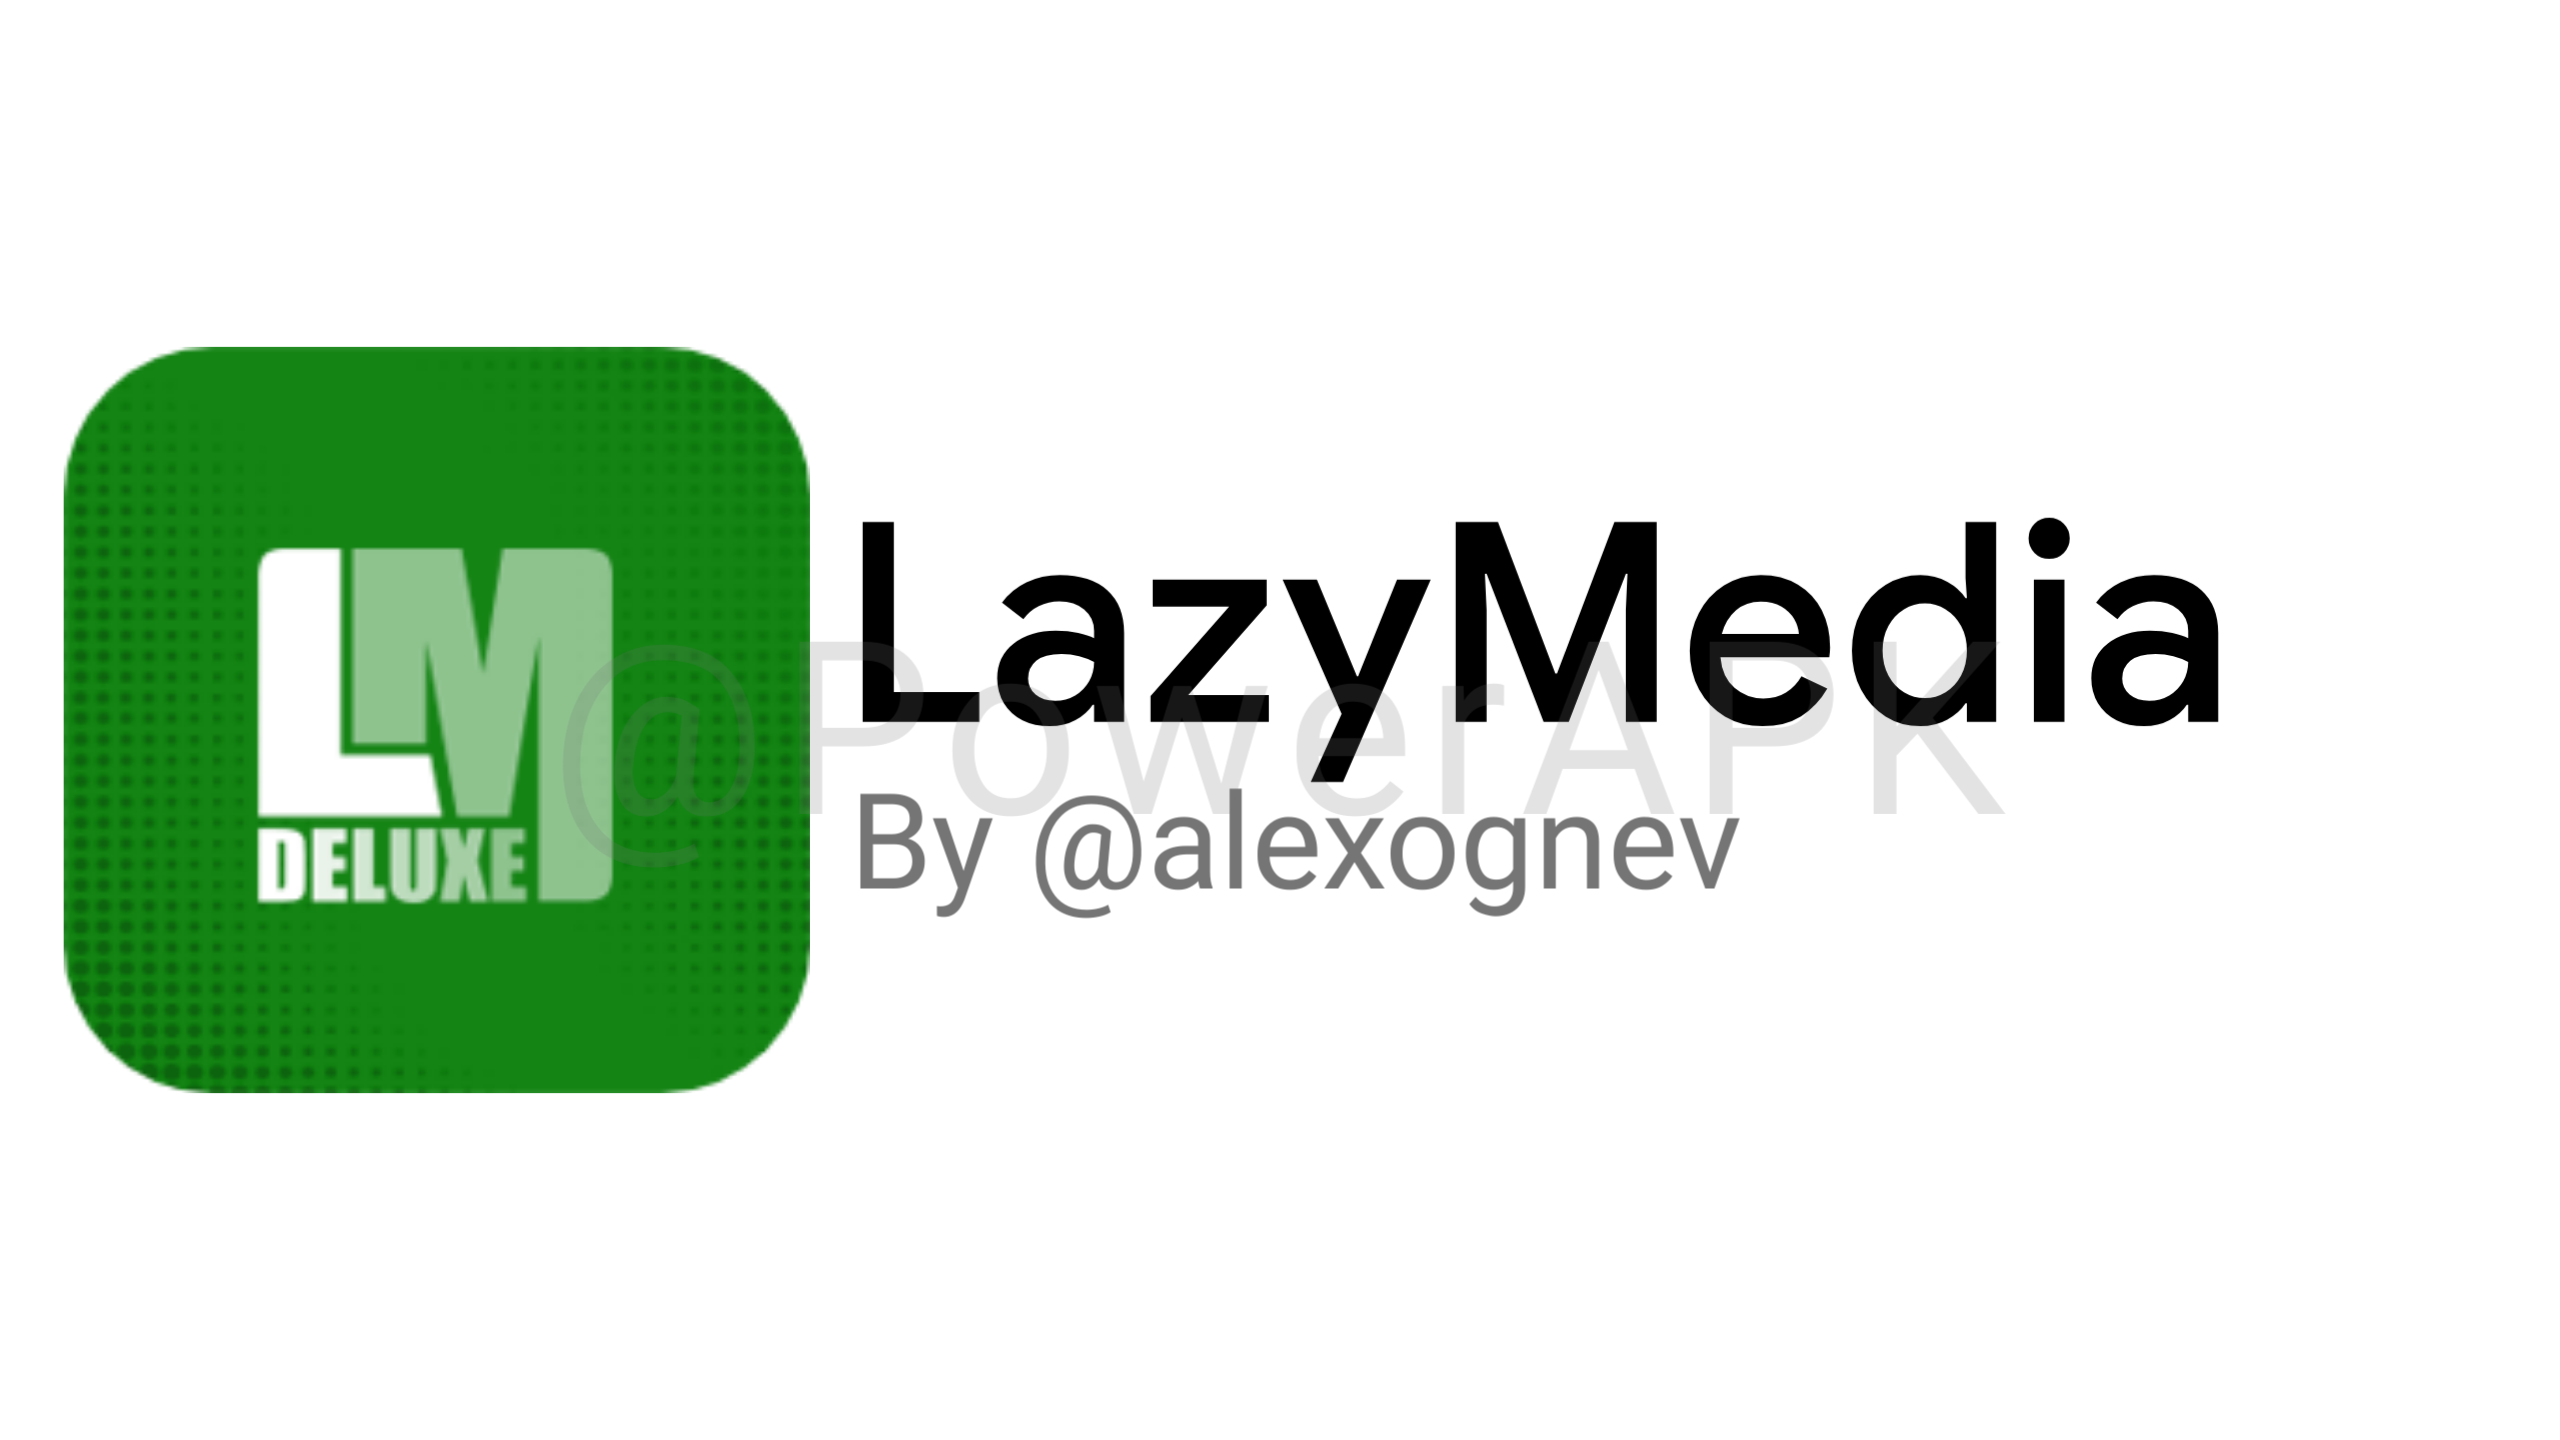 Логотип LAZYMEDIA. LAZYMEDIA Deluxe иконка. LAZYMEDIA Deluxe Pro. Иконка Lazy Media.